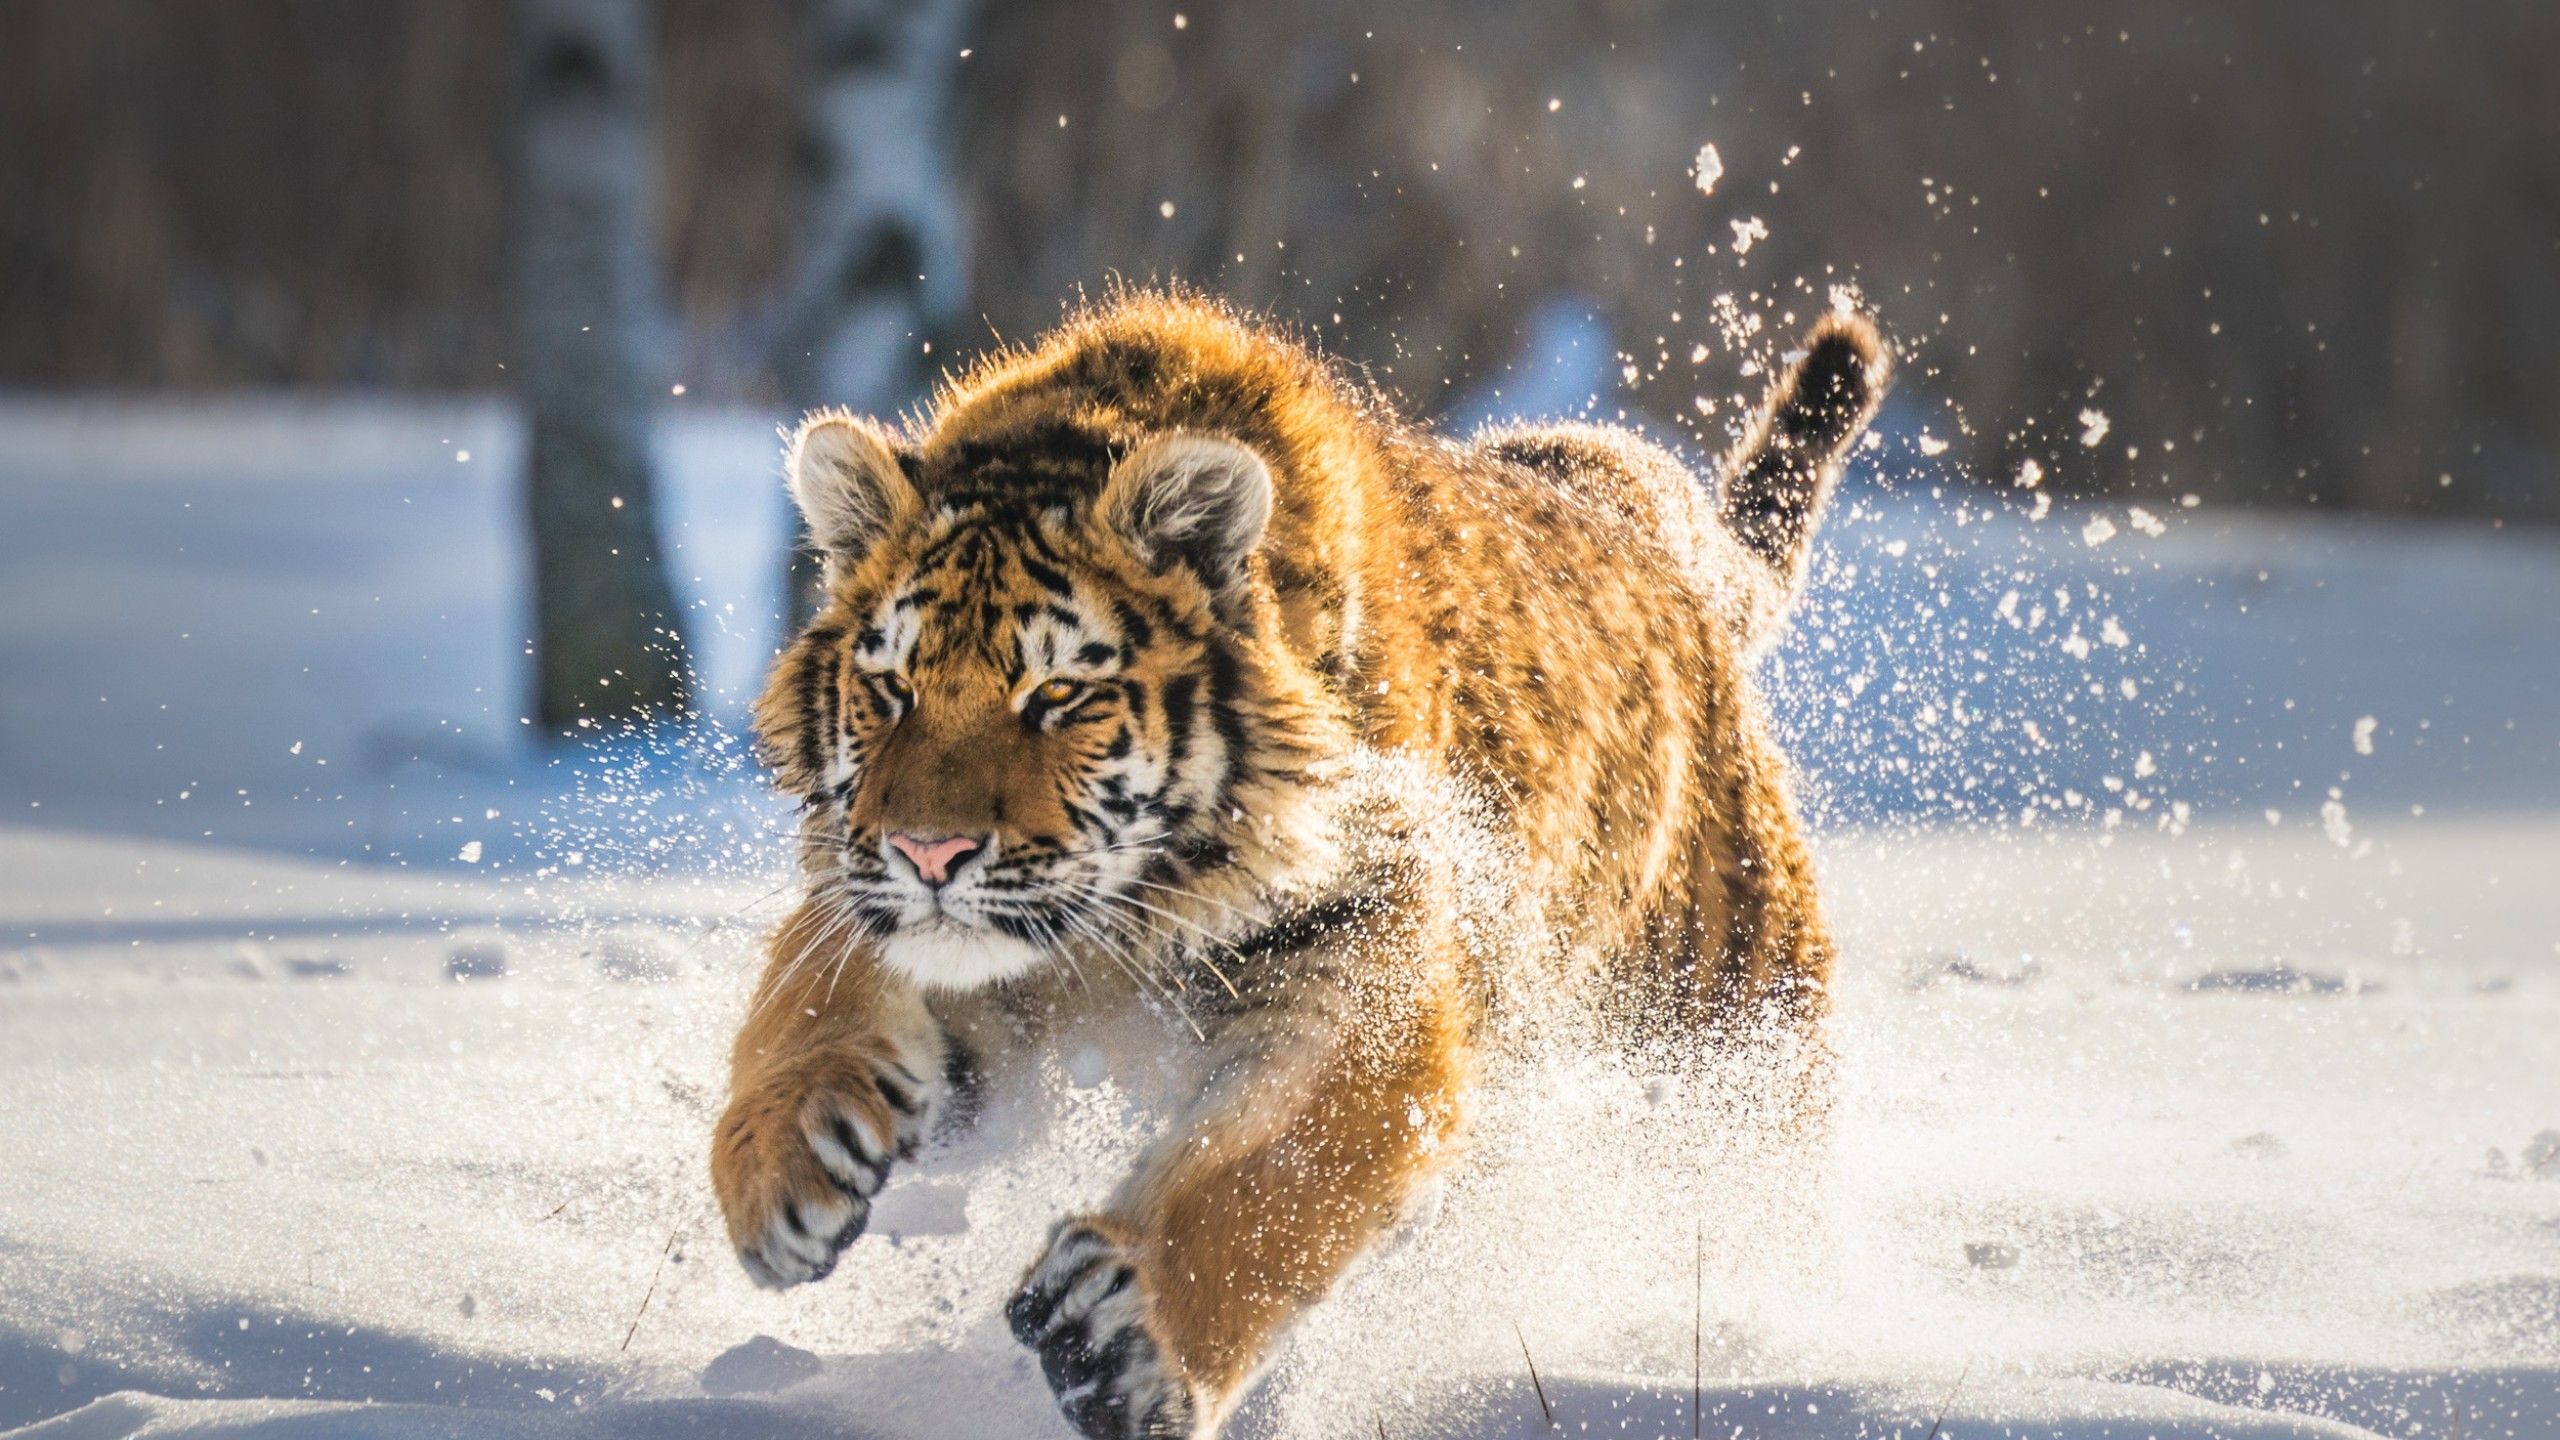 Cute Tiger Cub Running 1440P Resolution HD 4k Wallpaper